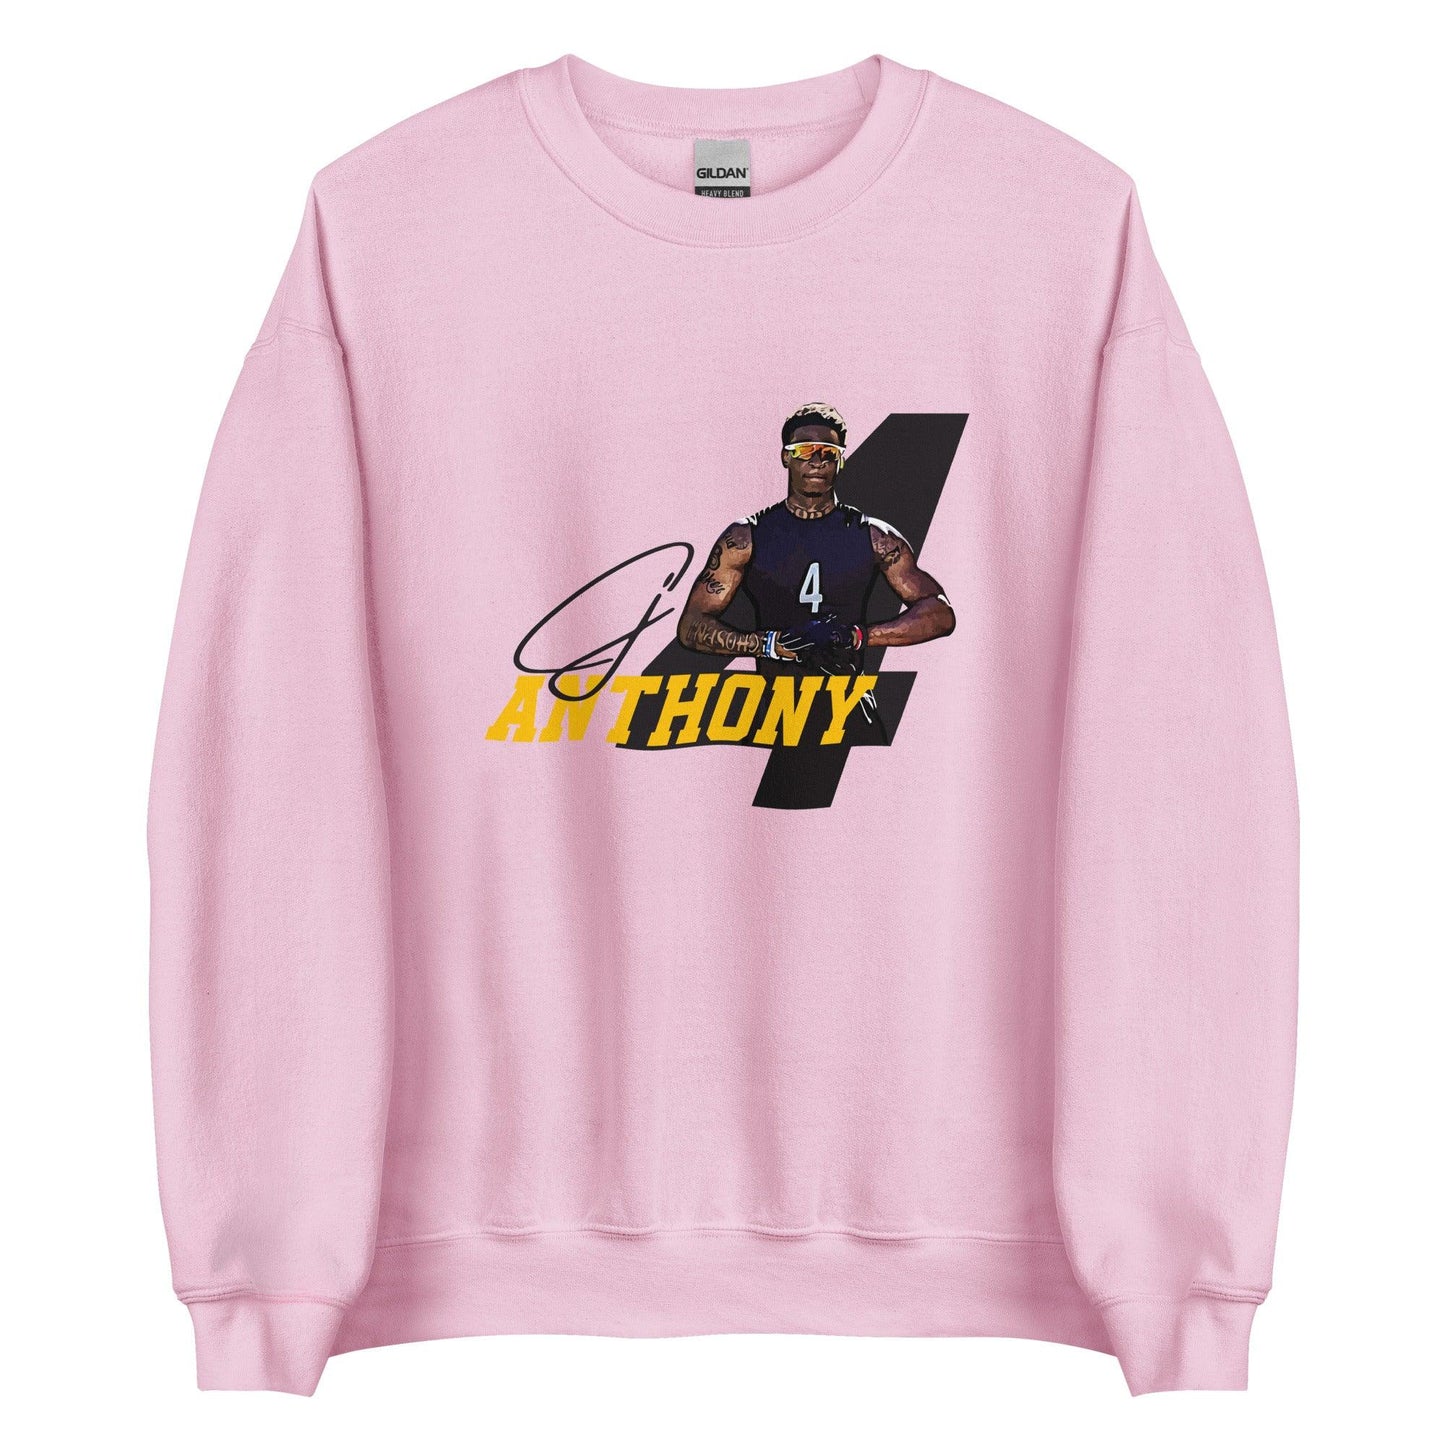 CJ Anthony "Gameday" Sweatshirt - Fan Arch